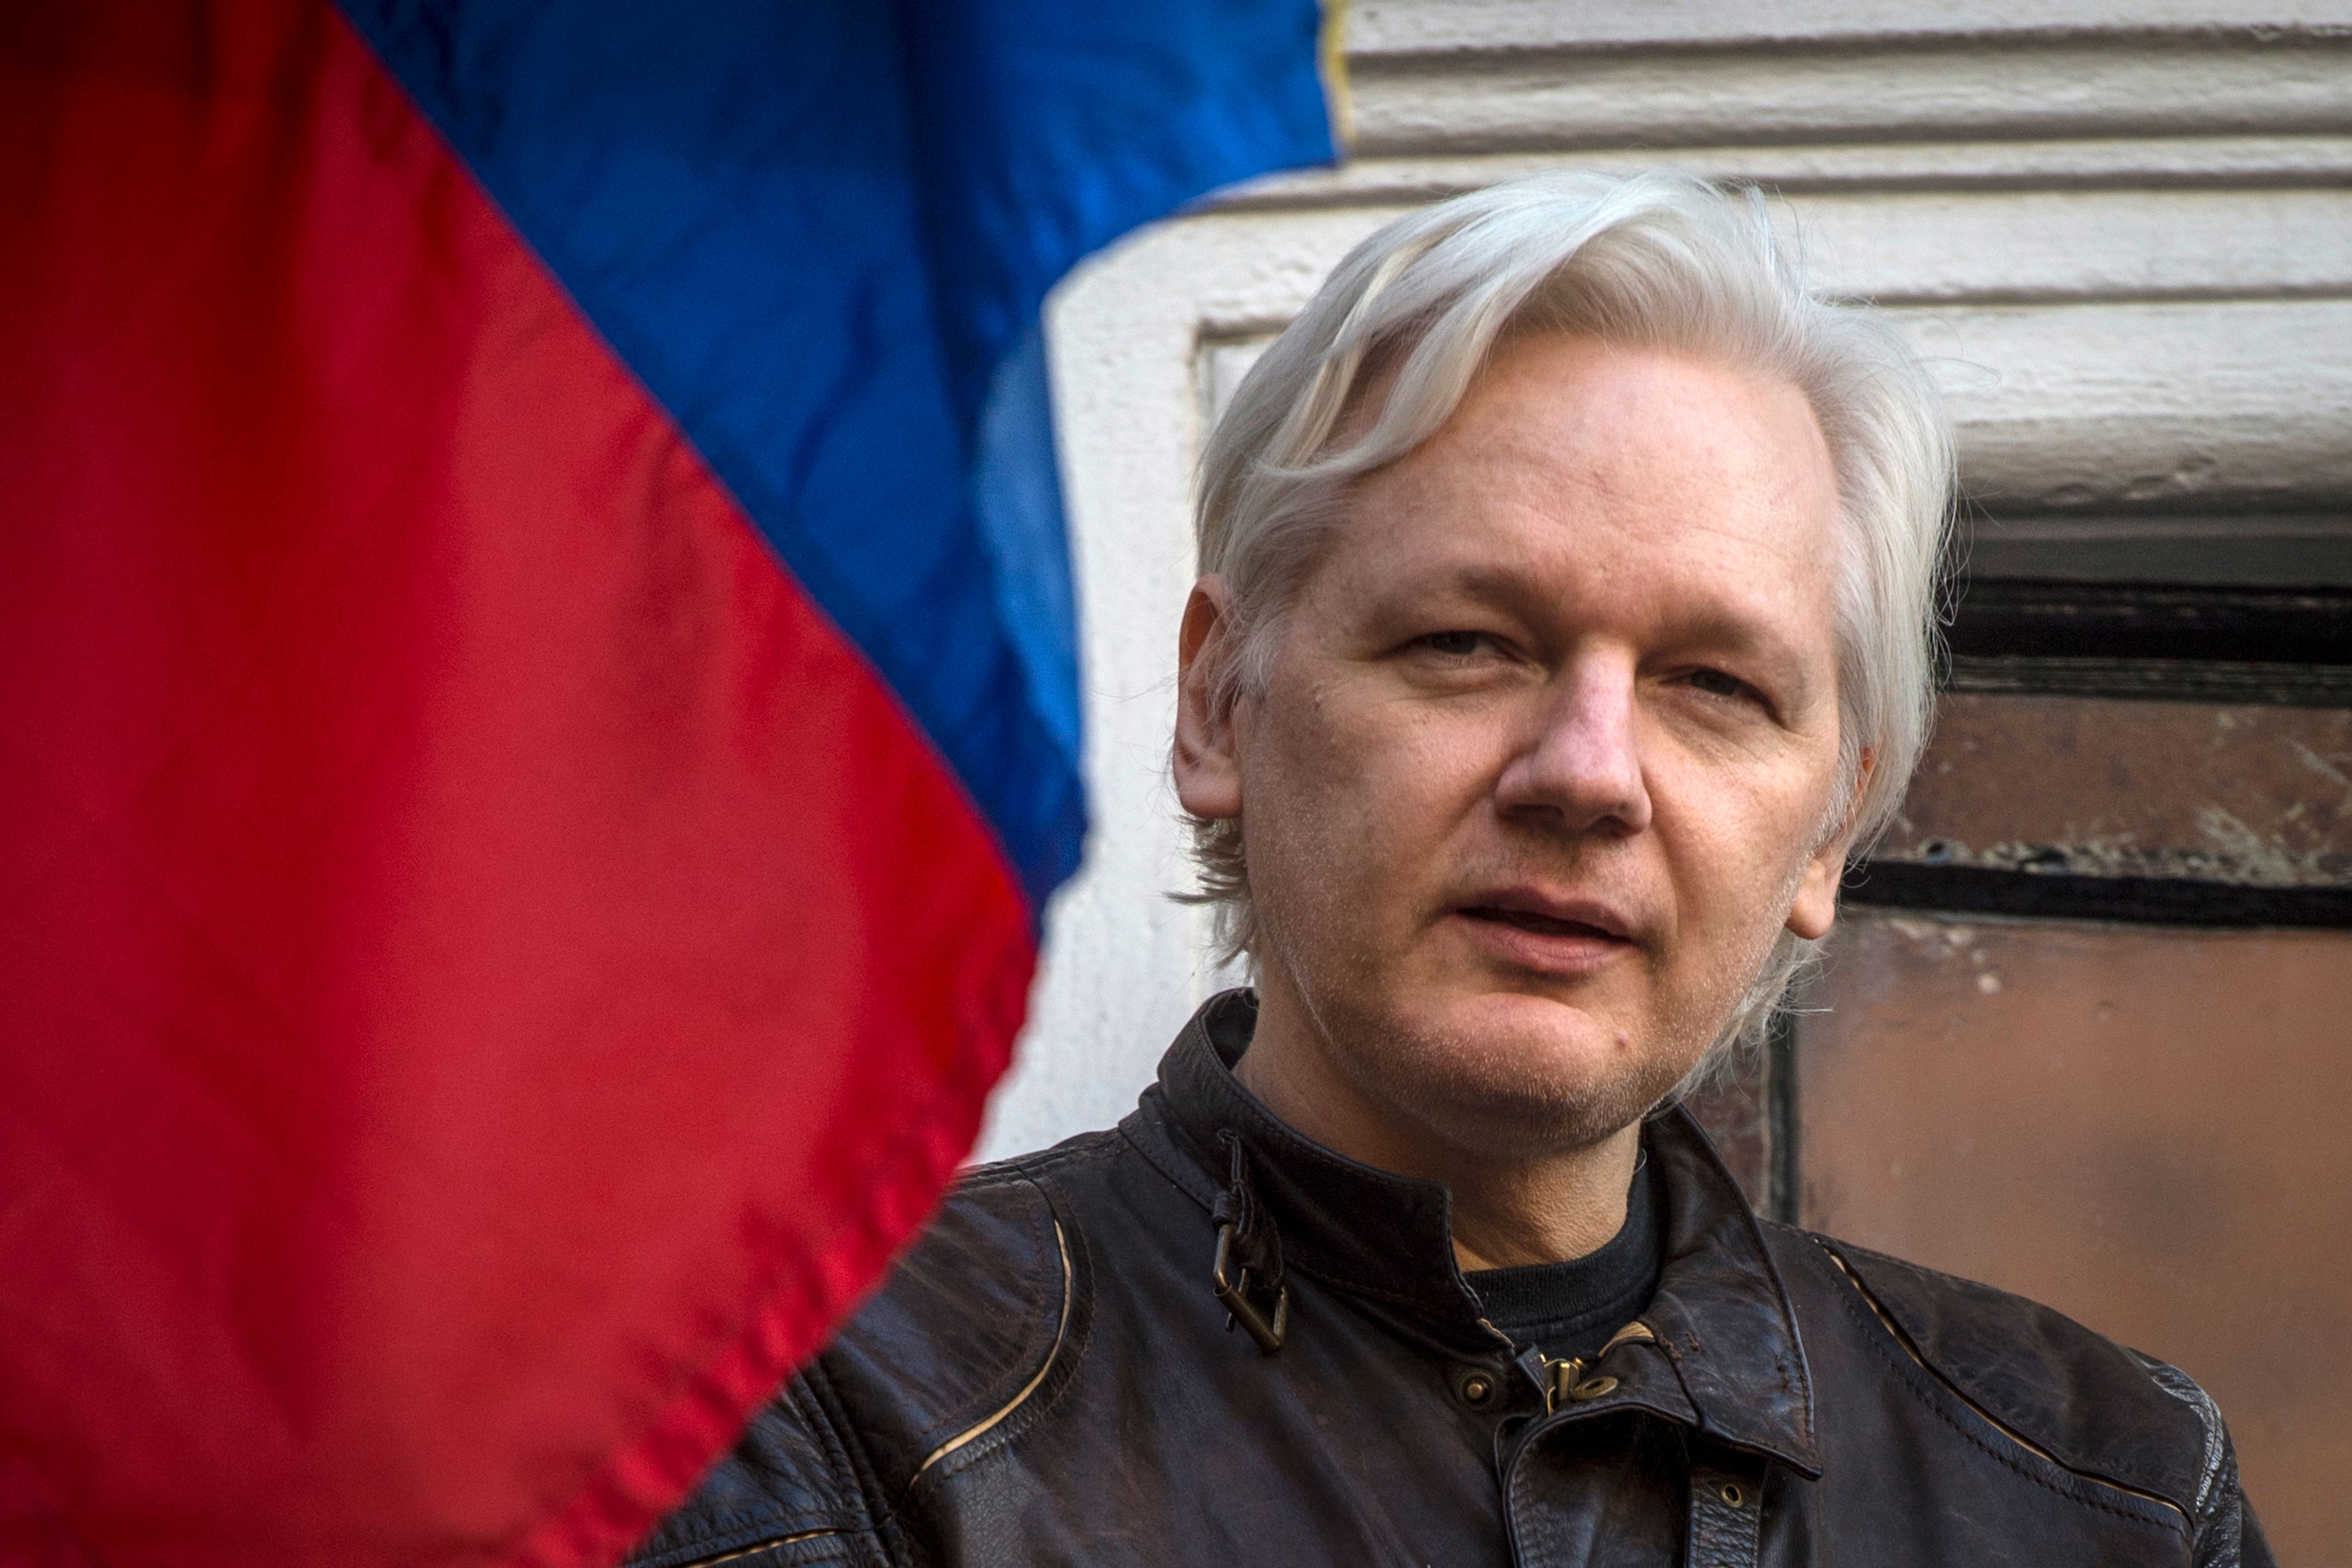 Julian Assange is now in Belmarsh prison in south-east London